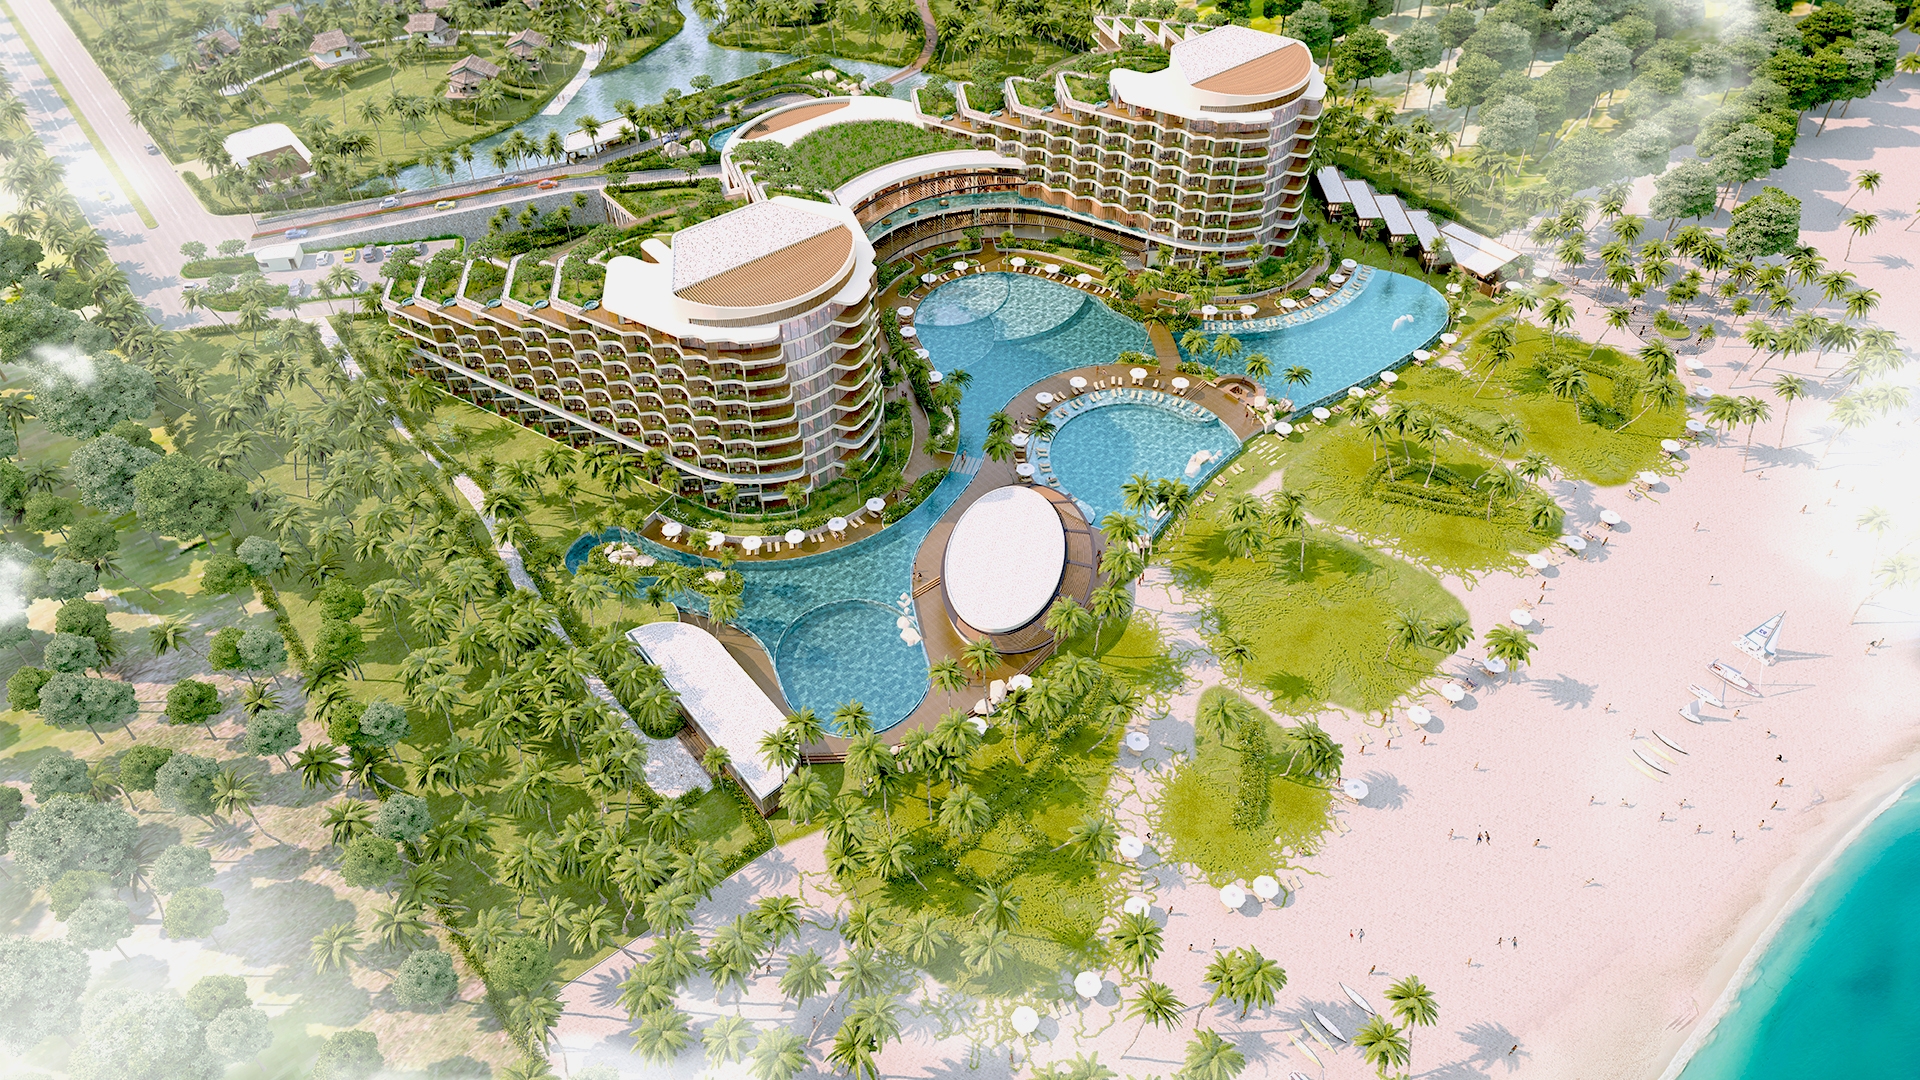 Amiana Cam Ranh Resort & Hotel